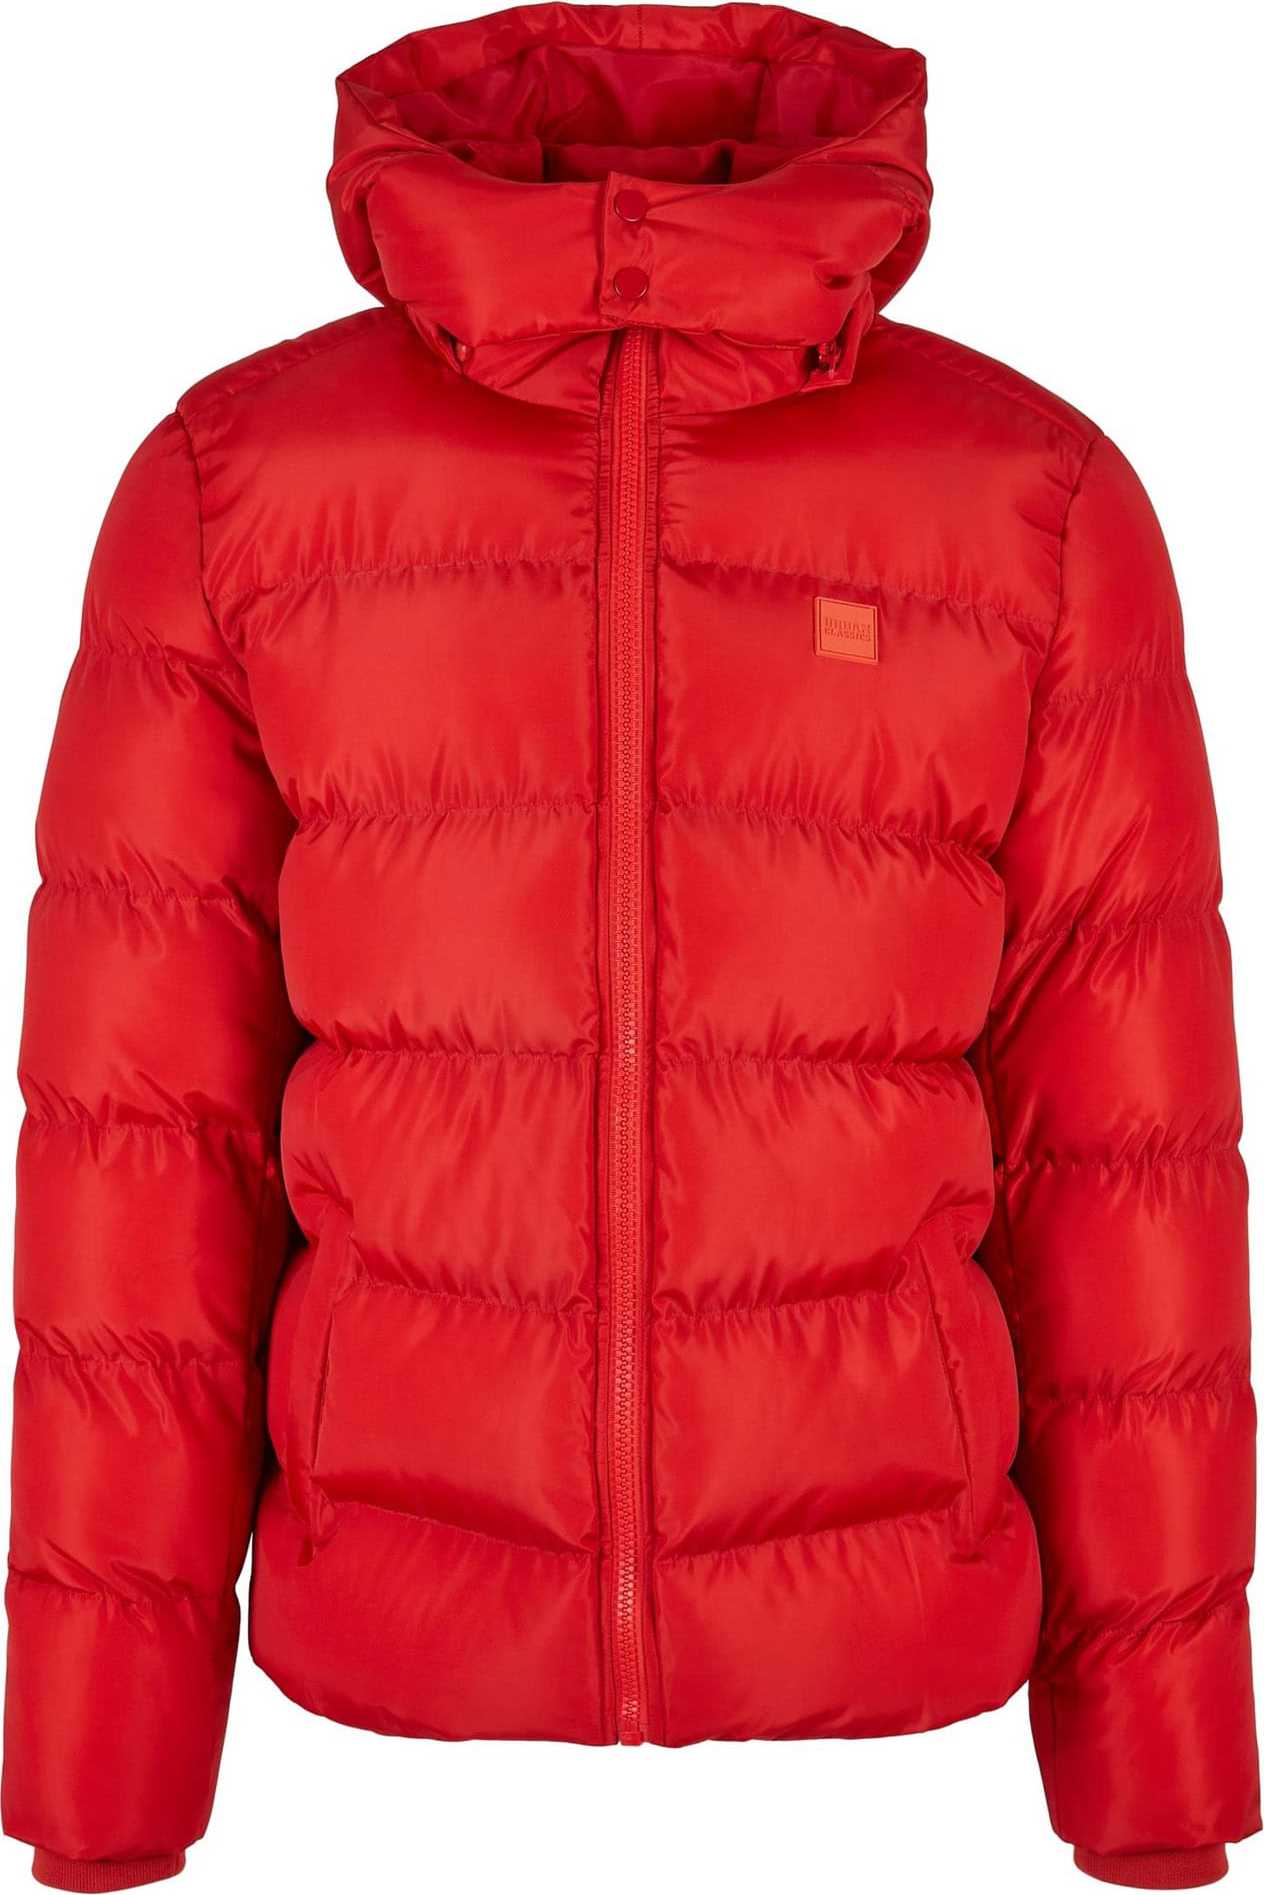 Zimní bunda Urban Classics oranžově červená